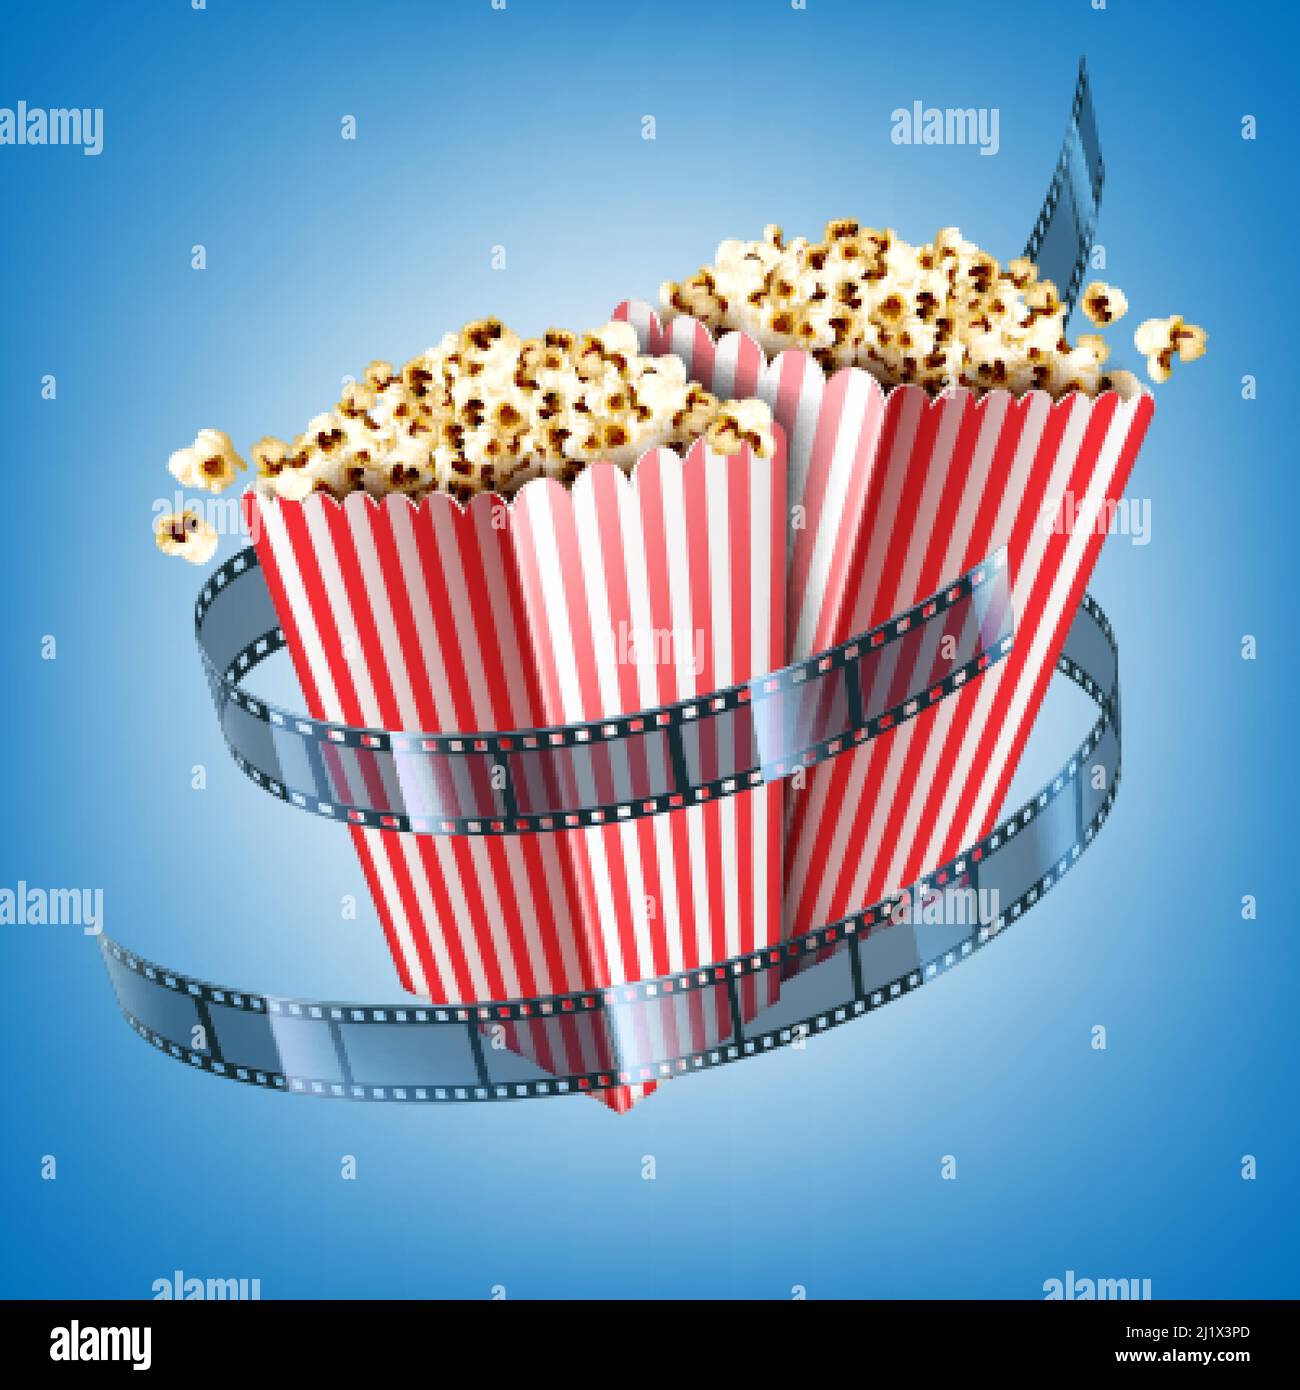 Kino-Flyer mit Filmstreifen und Popcorn in gestreiften Papierschachteln. Vektor realistische Illustration von weißen und roten Eimern mit Popcorn und Zimt Stock Vektor